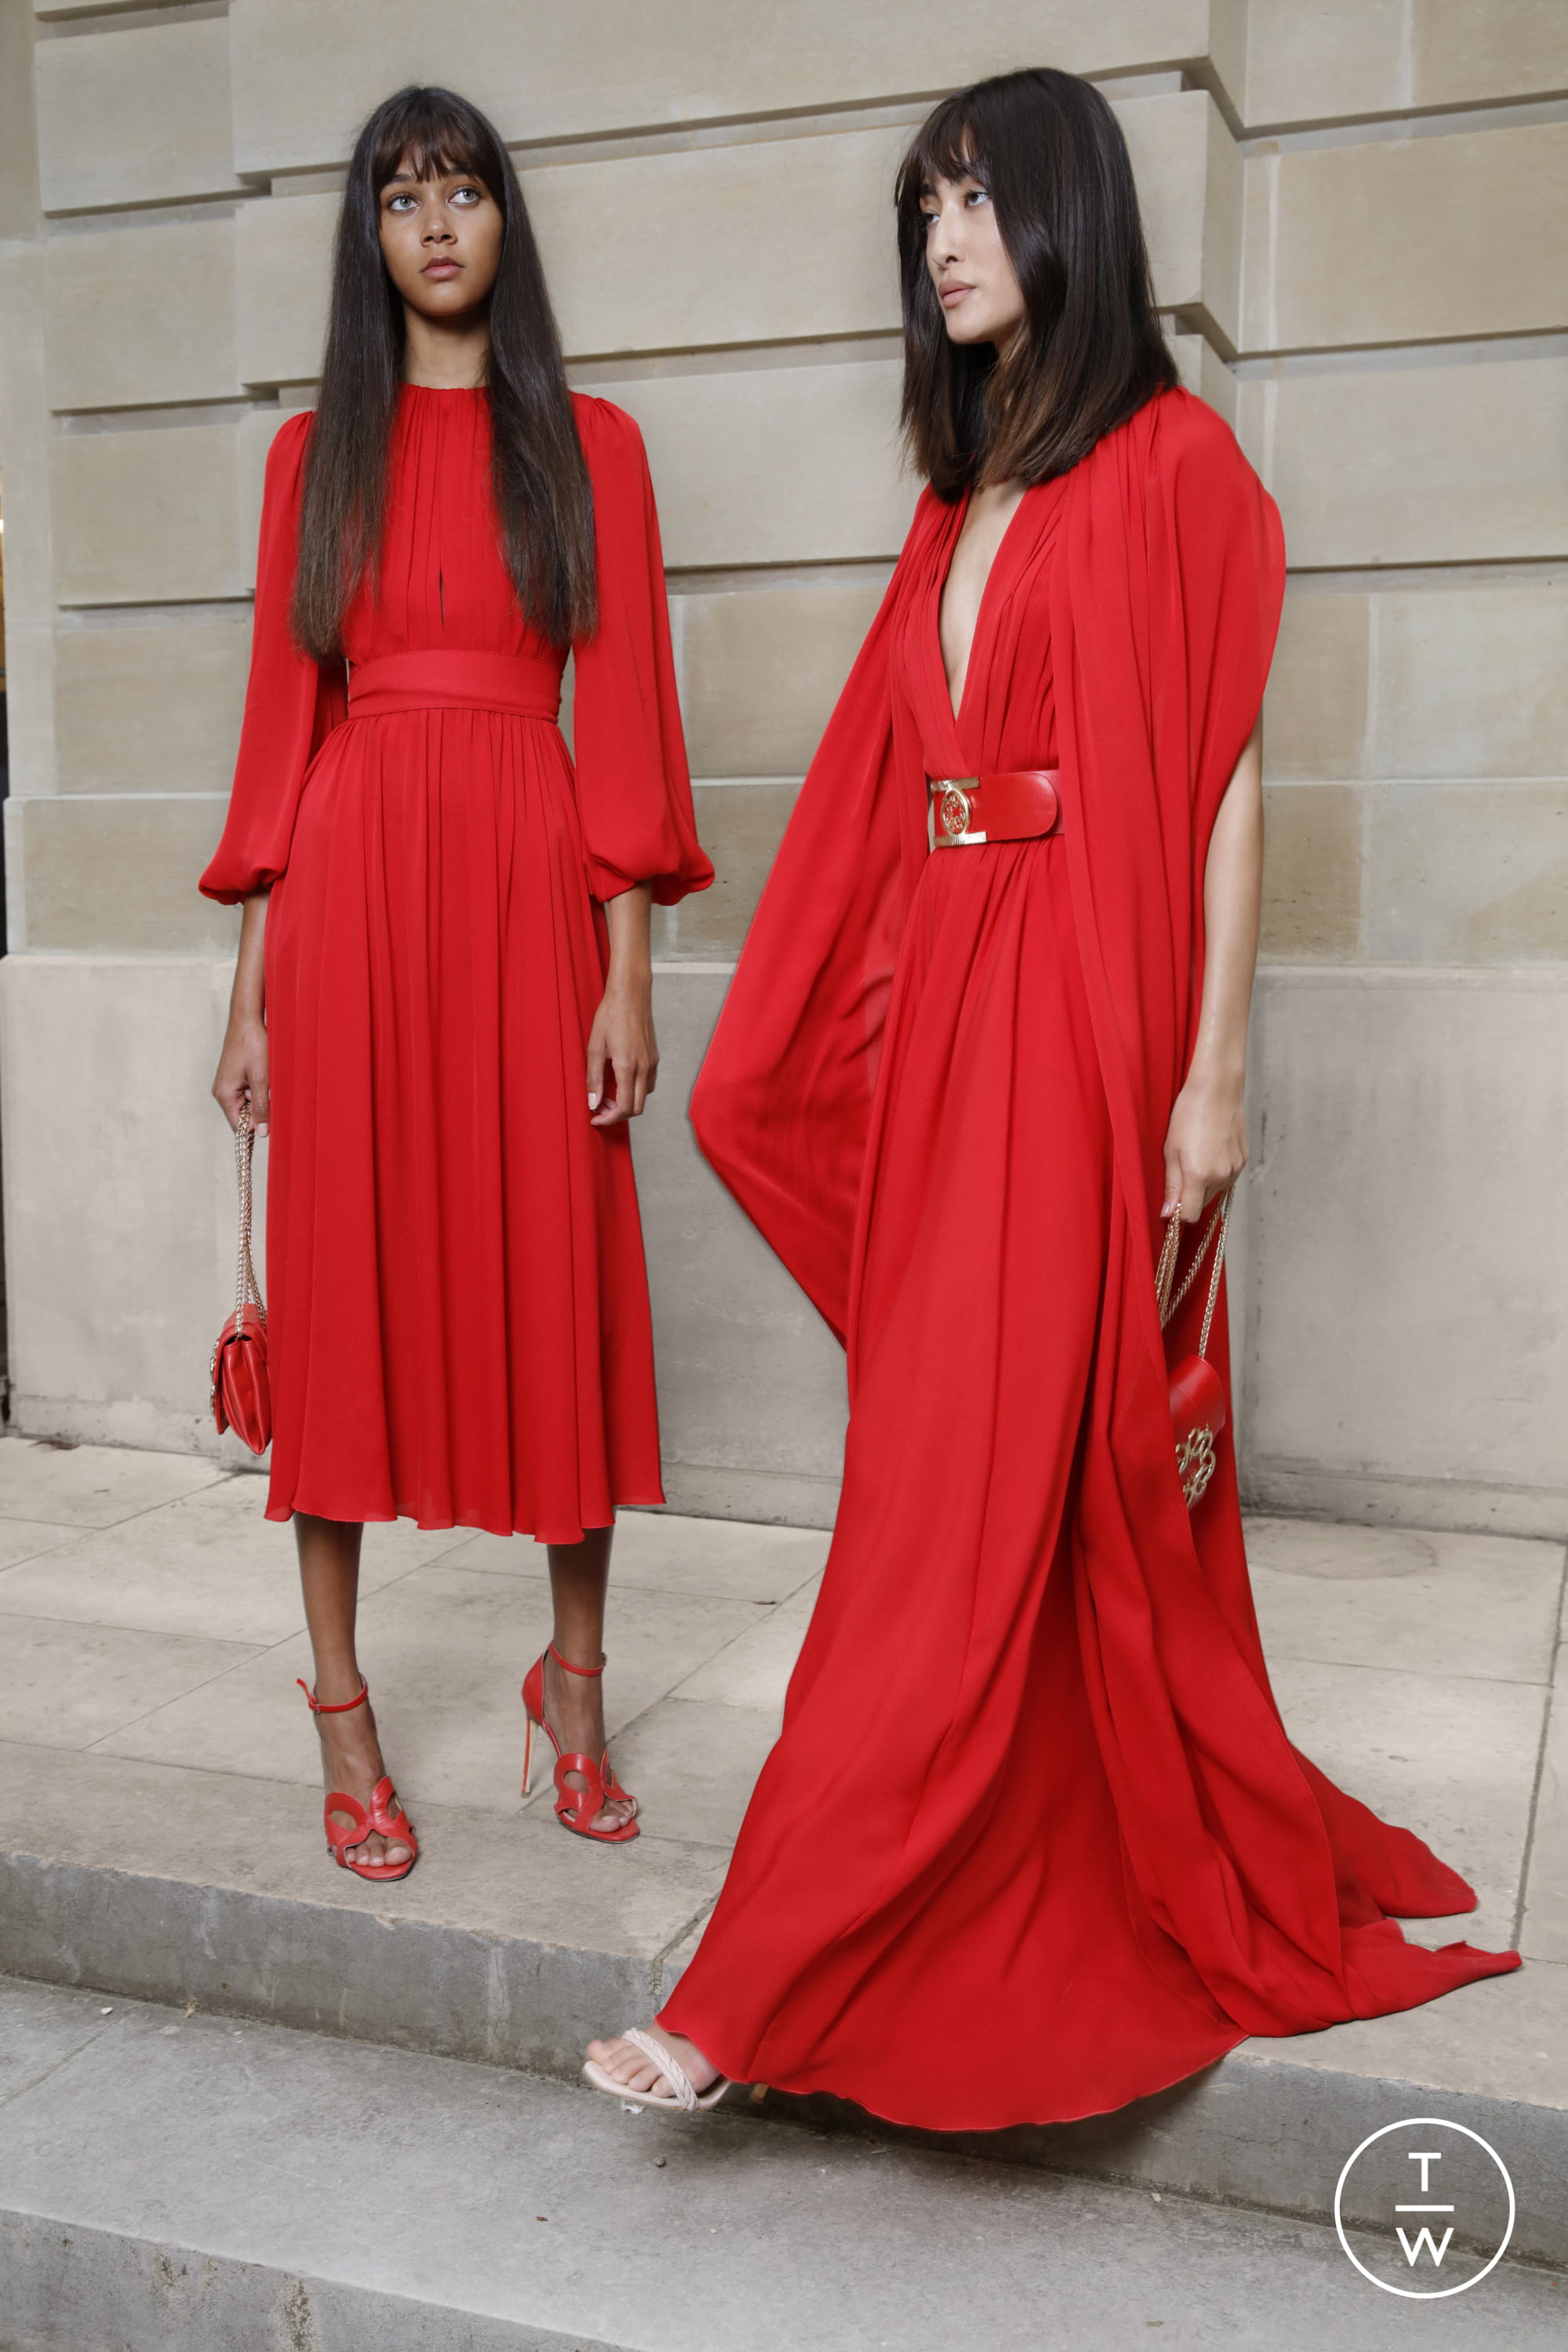 Louis Vuitton SS22 womenswear accessories #35 - Tagwalk: The